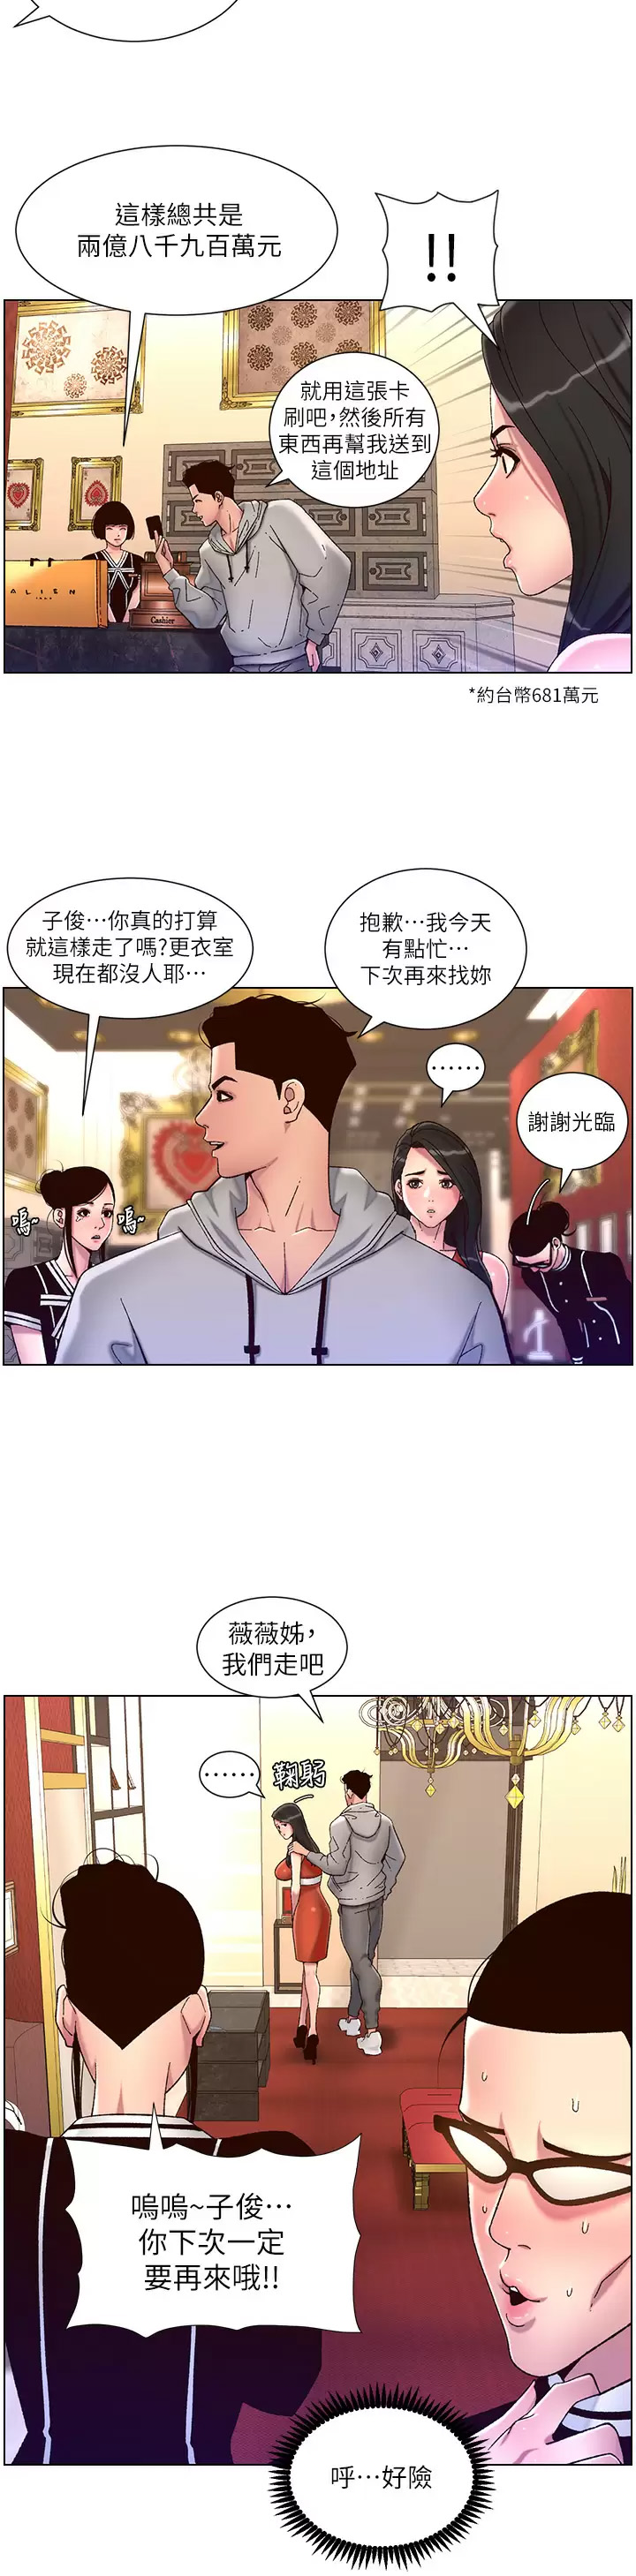 韩国污漫画 帝王App 第55话 楼凤大变身! 26